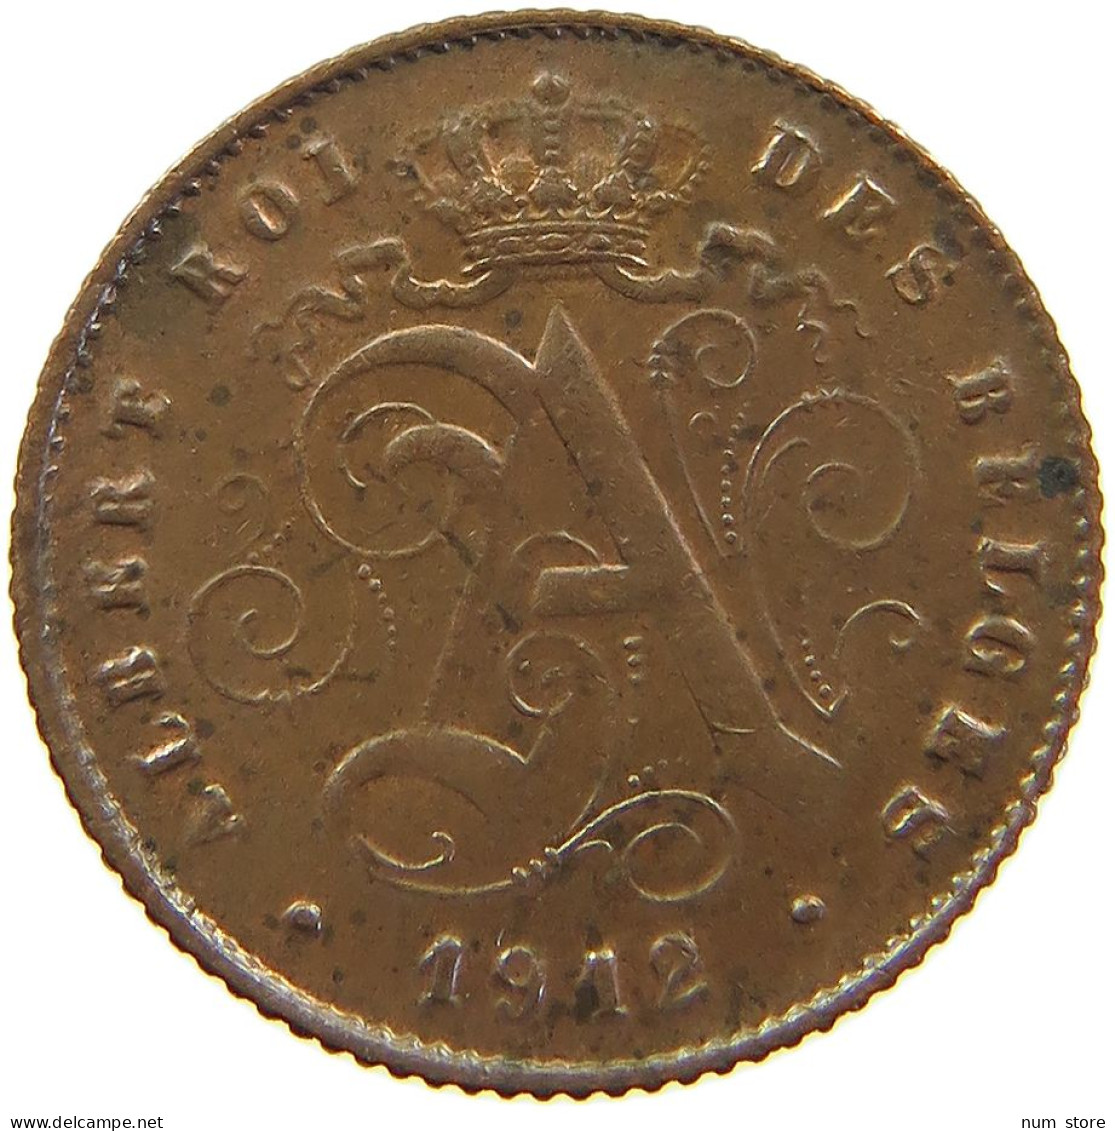 BELGIUM 1 CENTIME 1912 #s094 0531 - 1 Cent